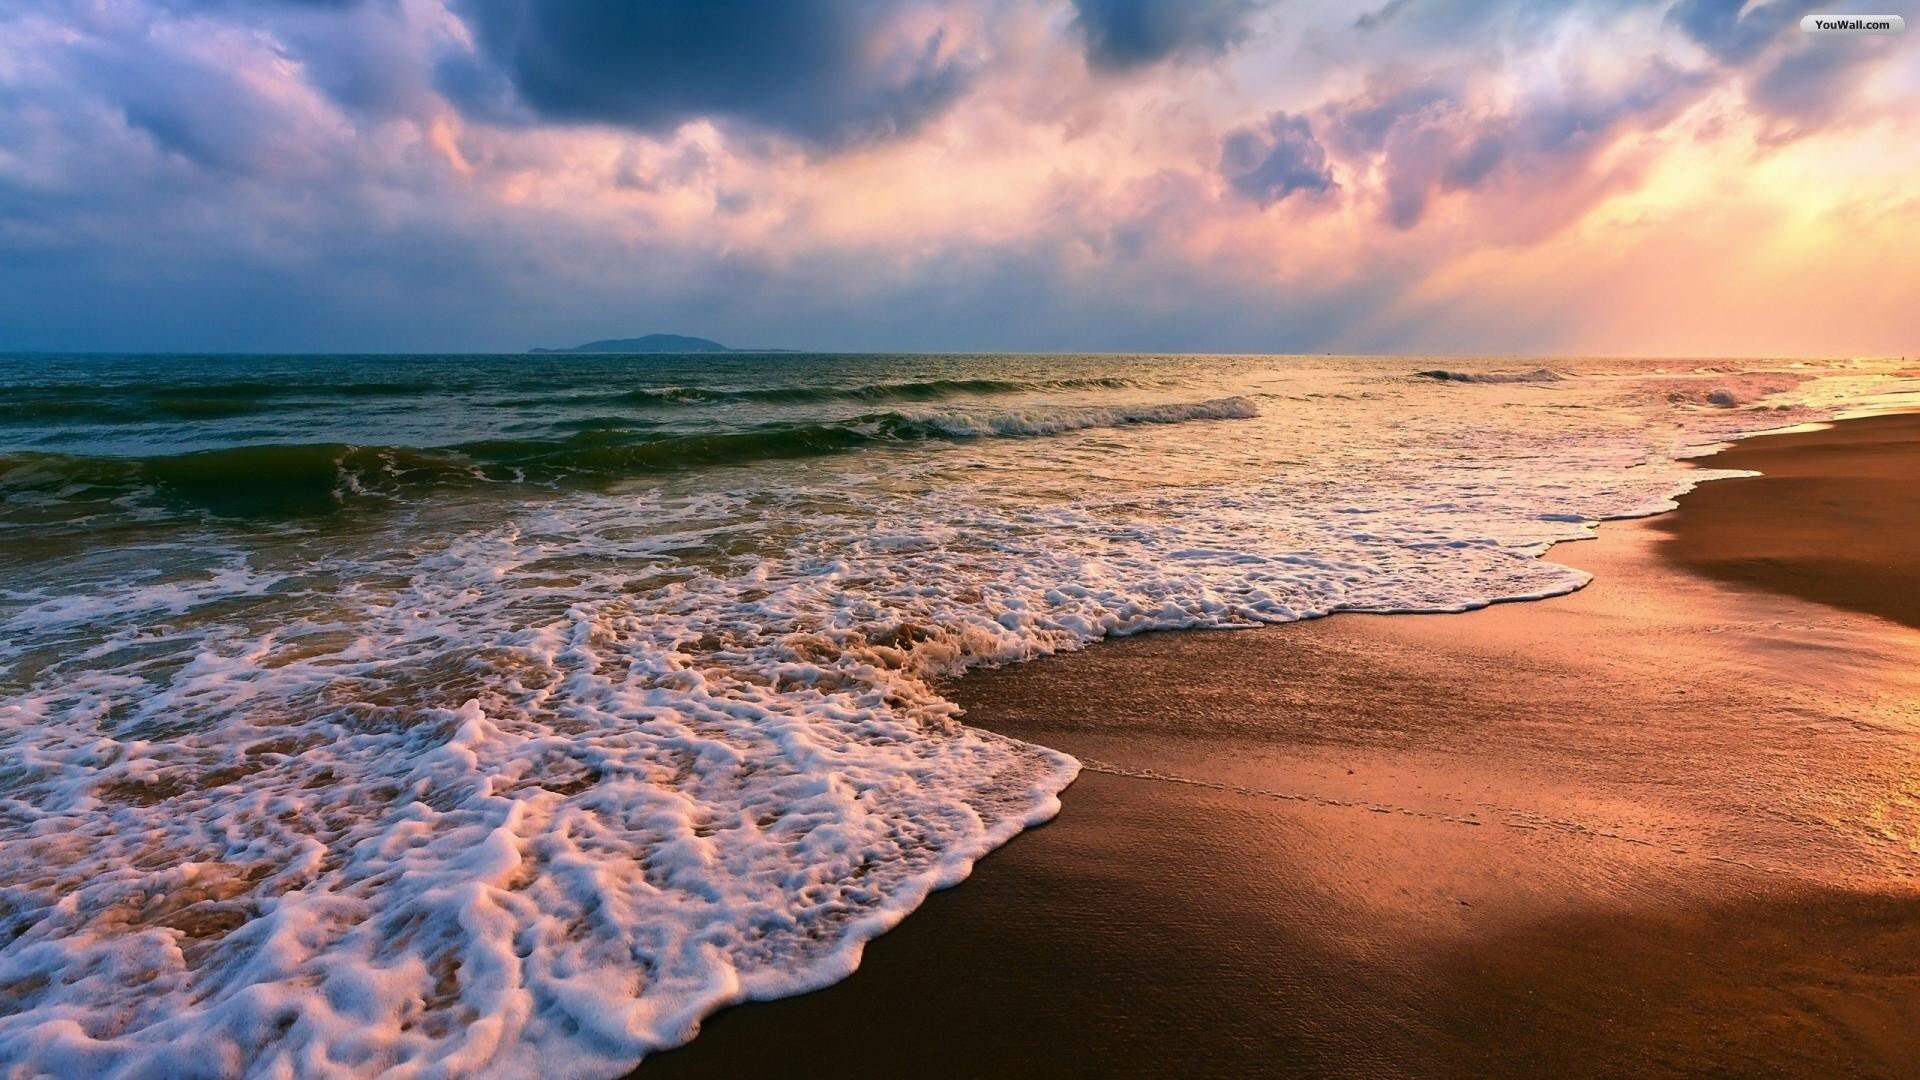 Beach Sunset Wallpaper for Desktop and Mobiles 15 Retina Macbook Pro  HD  Wallpaper  Wallpapersnet